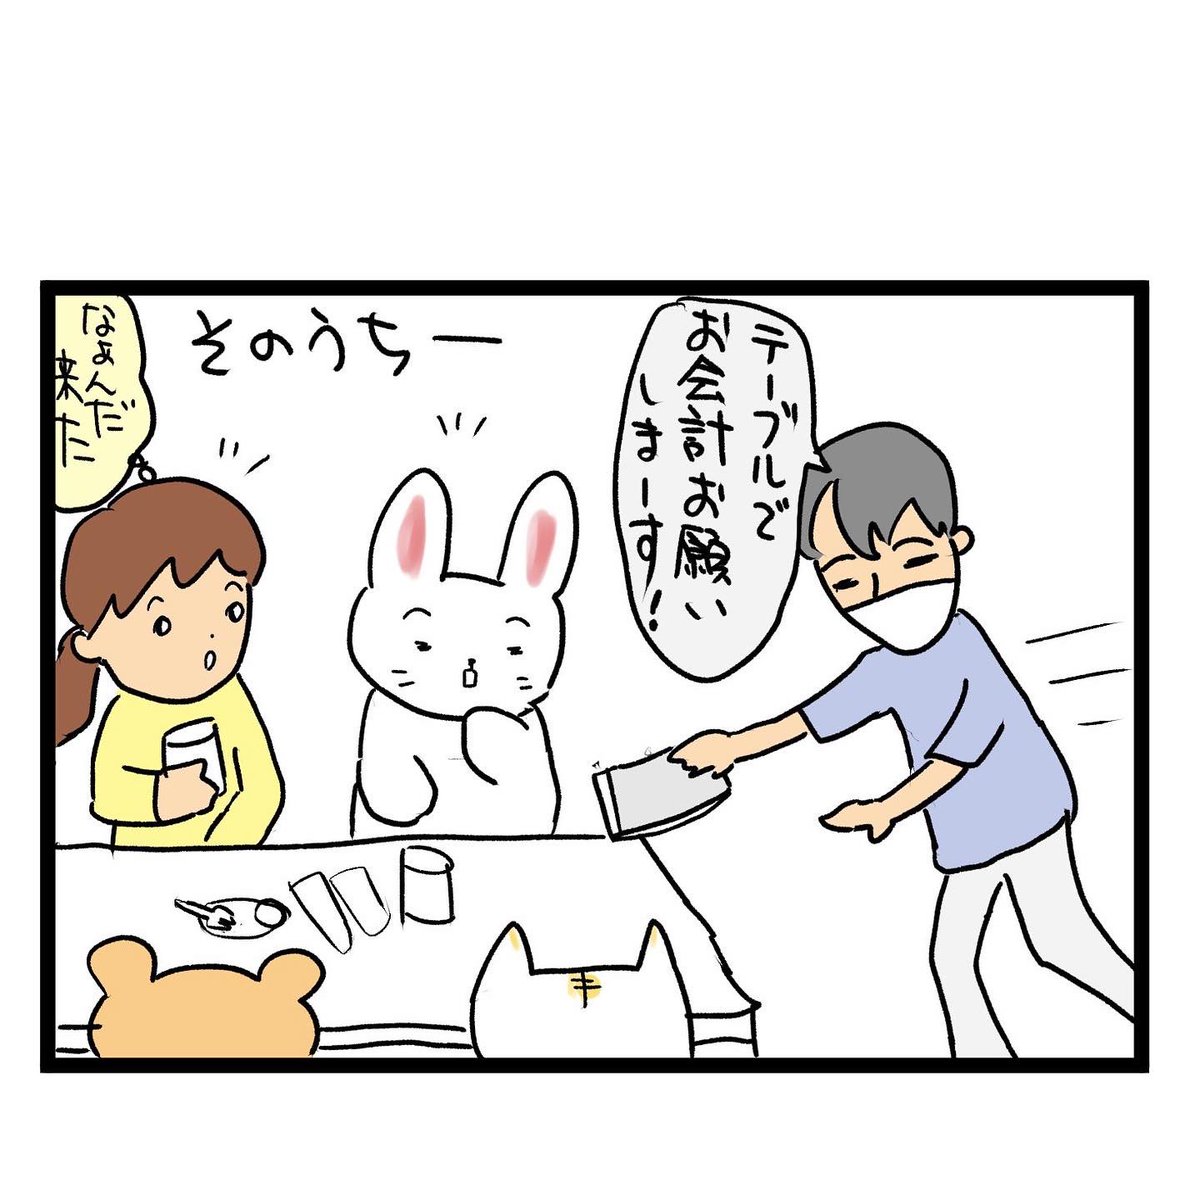 #四コマ漫画
#外食 